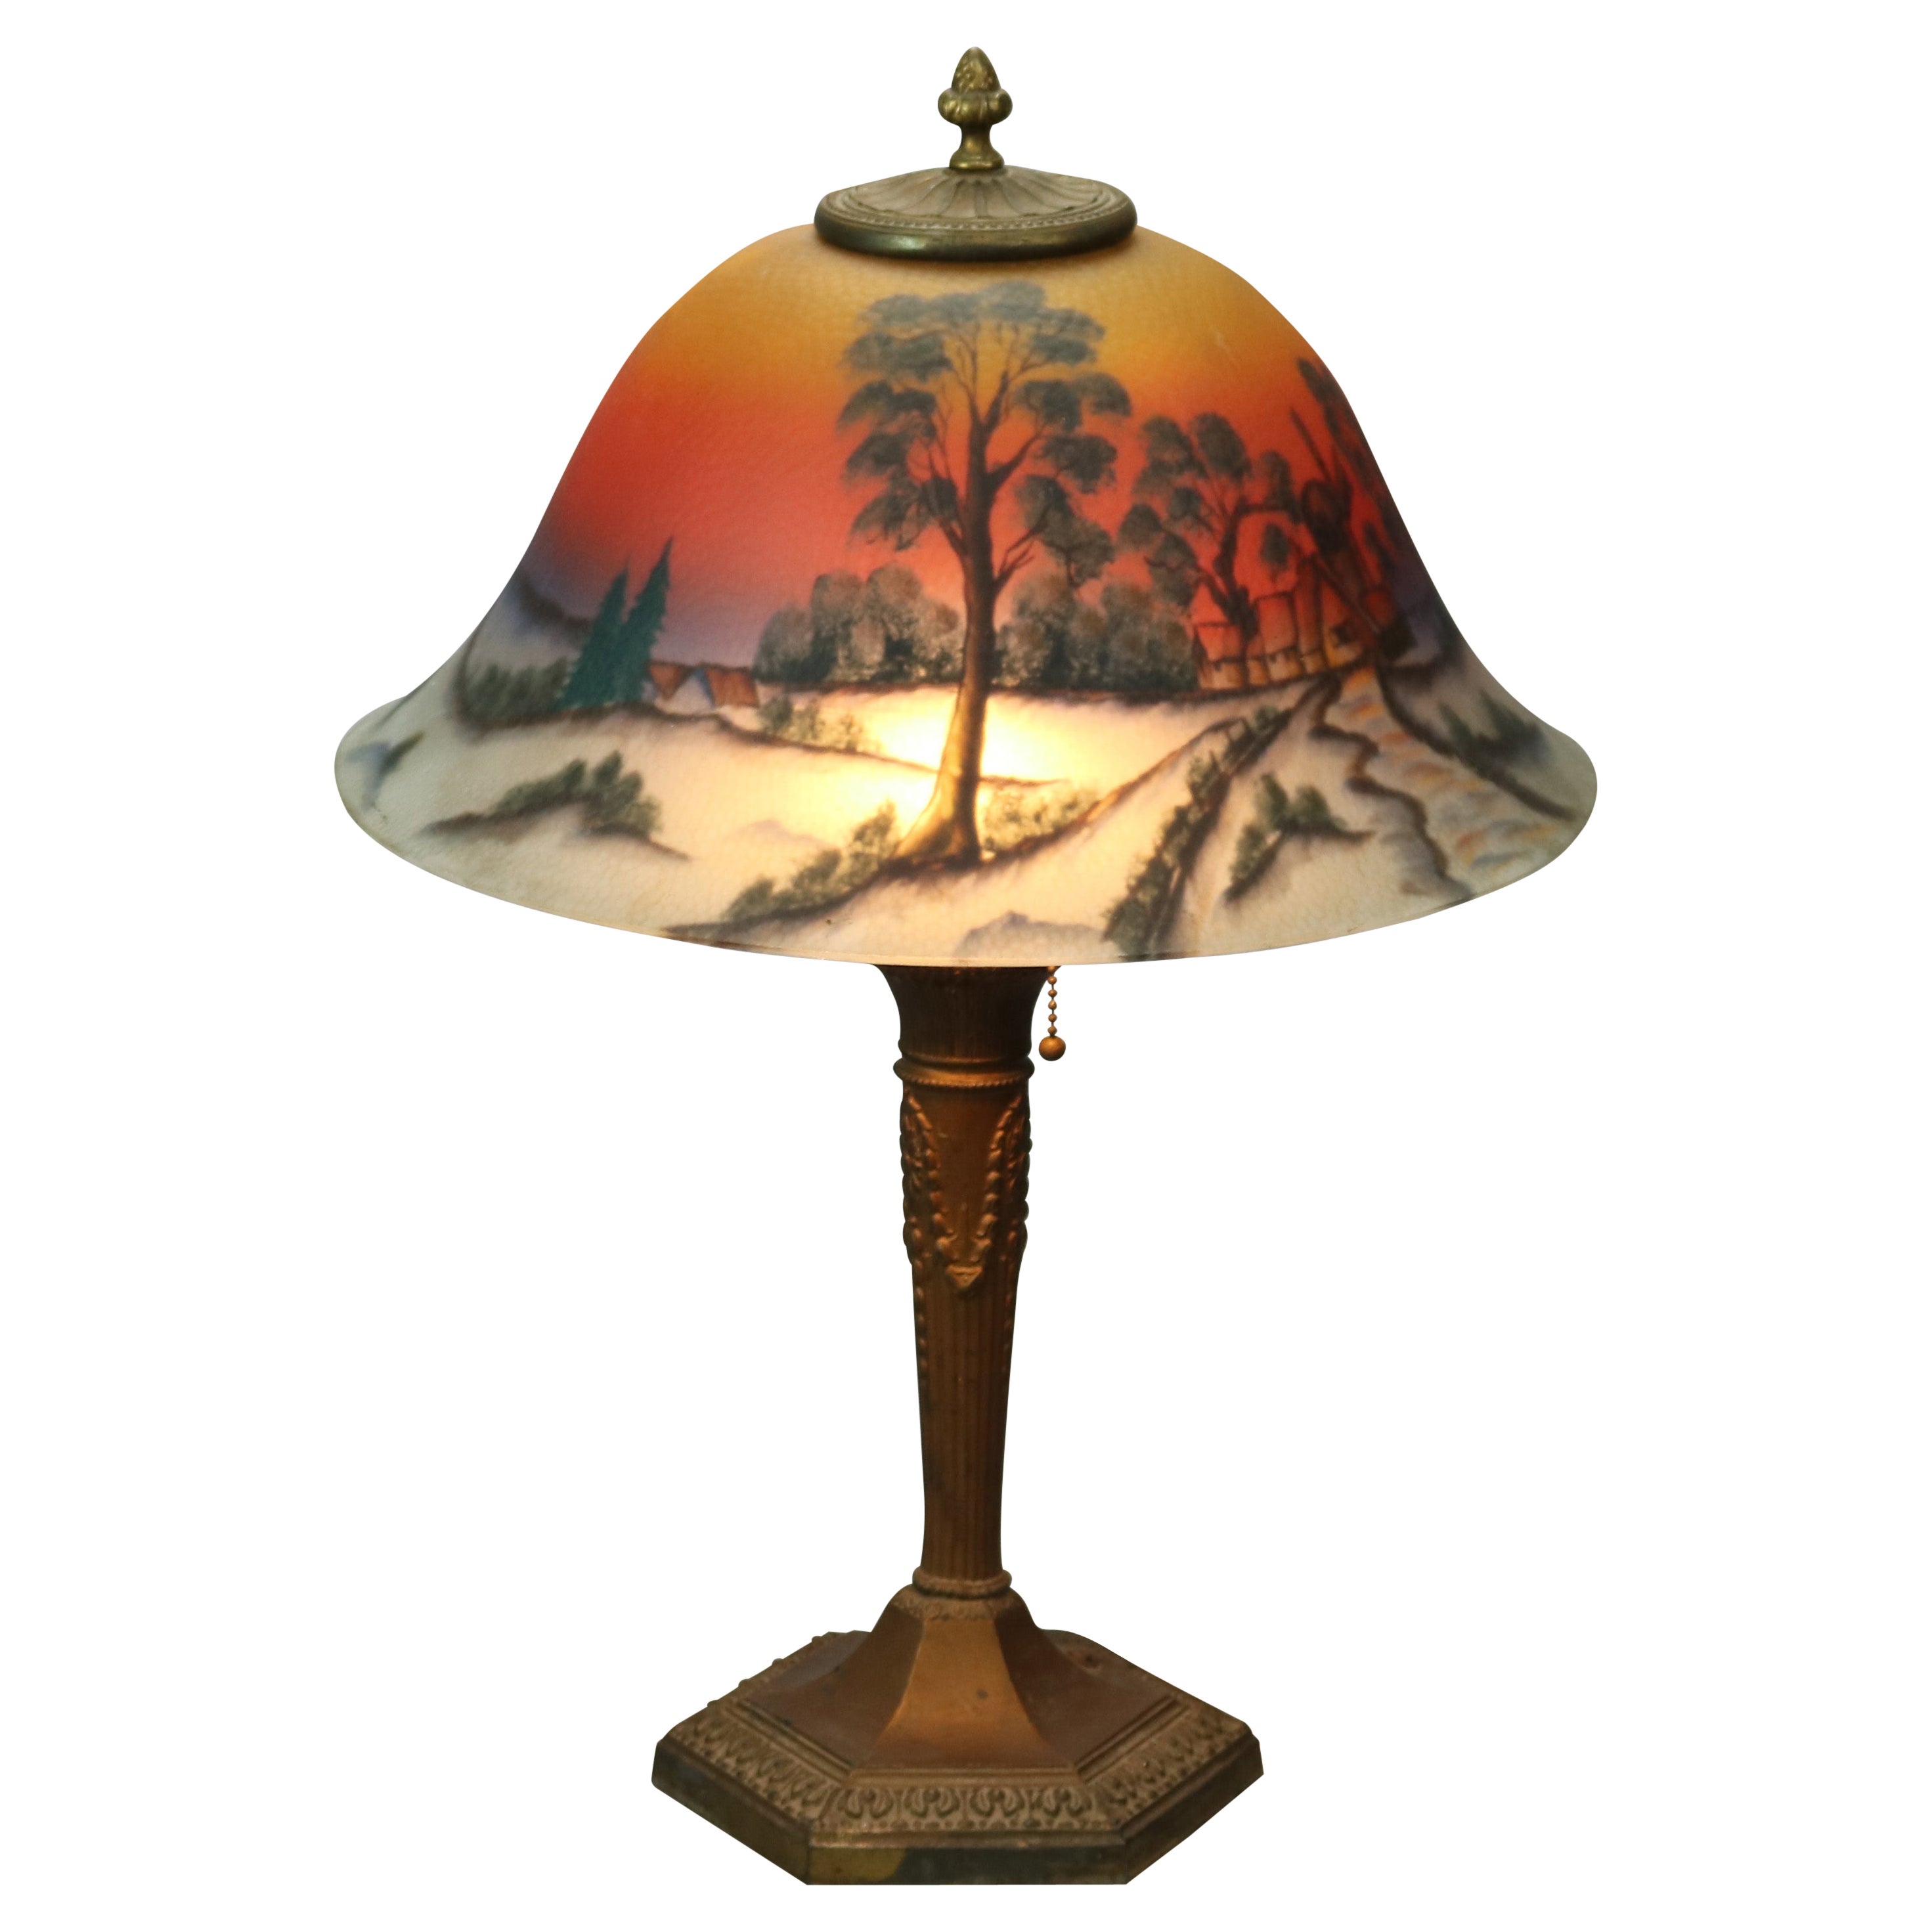 Antique Arts & Crafts Phoenix Reverse Painted Lamp, Landscape, c1920